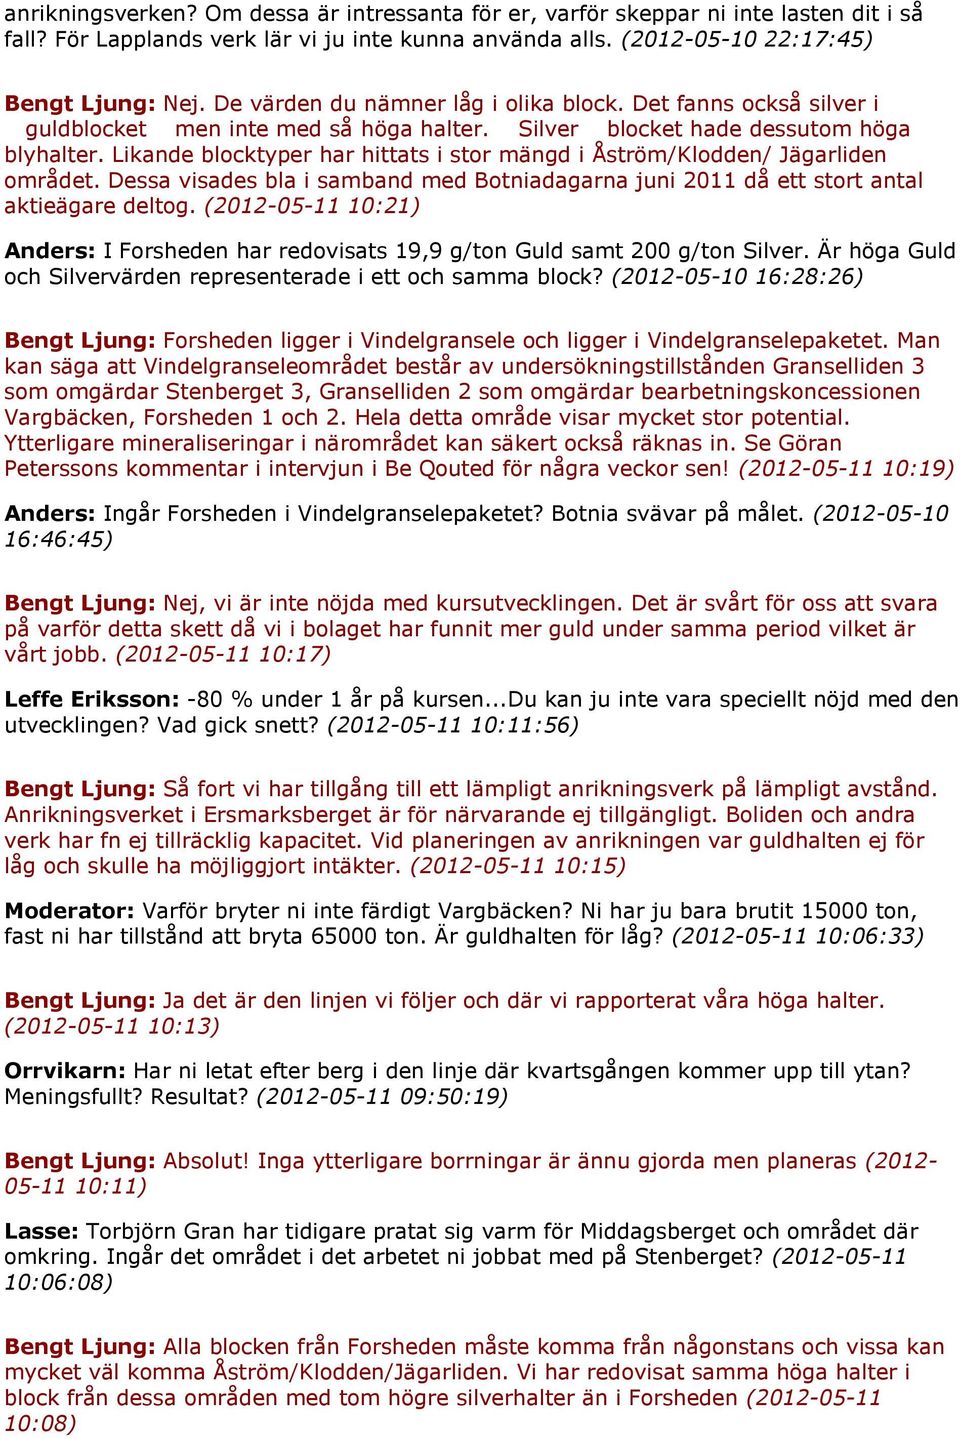 Likande blocktyper har hittats i stor mängd i Åström/Klodden/ Jägarliden området. Dessa visades bla i samband med Botniadagarna juni 2011 då ett stort antal aktieägare deltog.